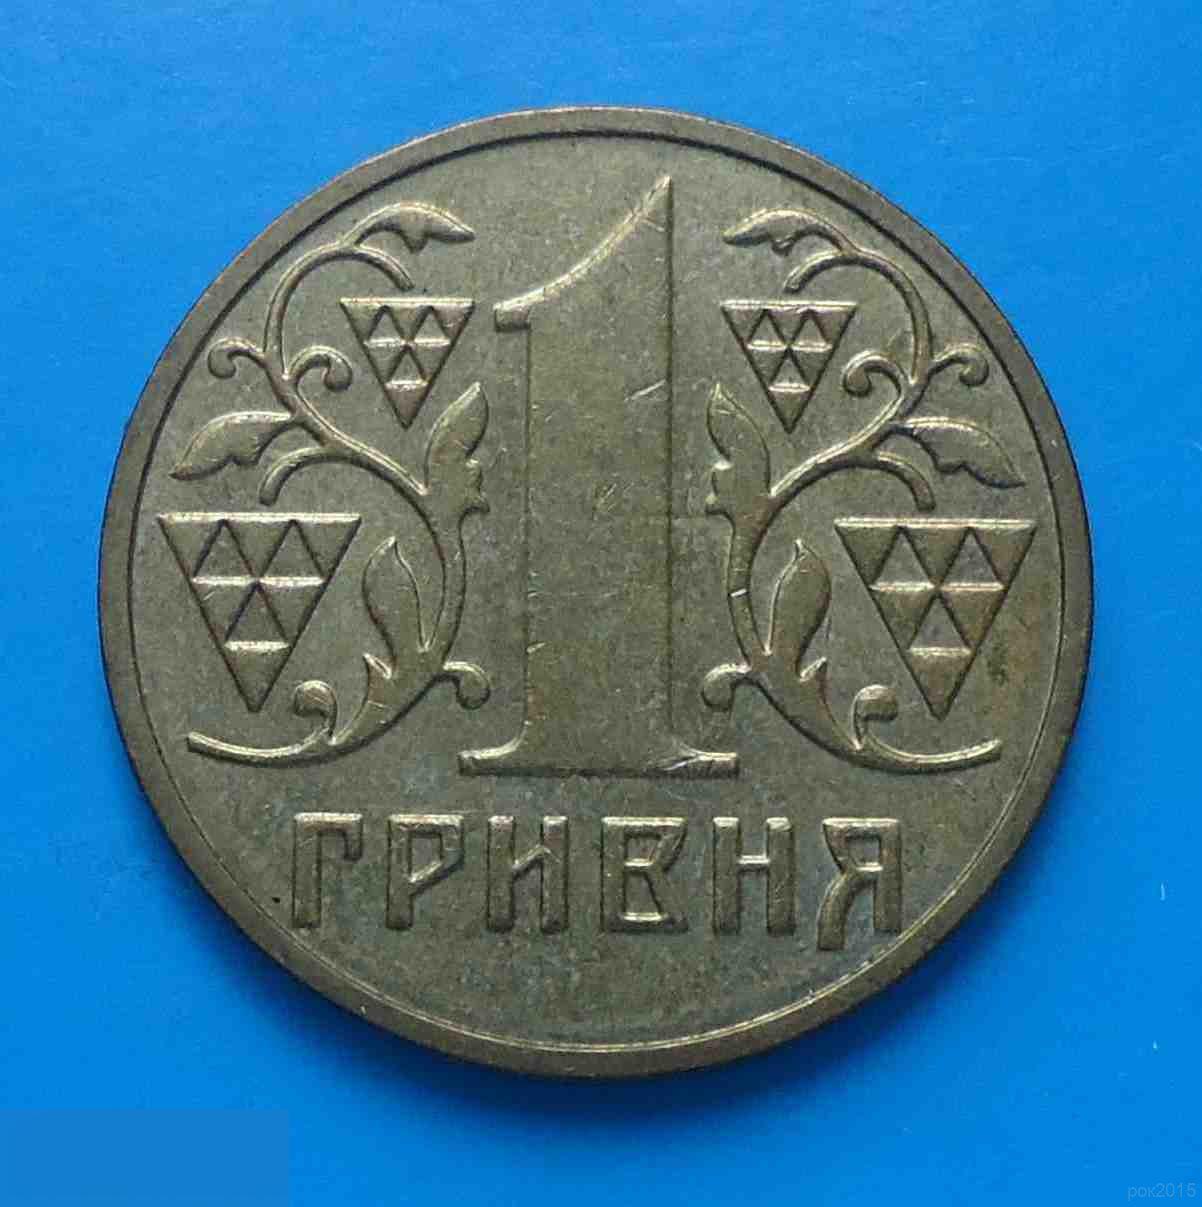 1 гривня 2001 года Украина